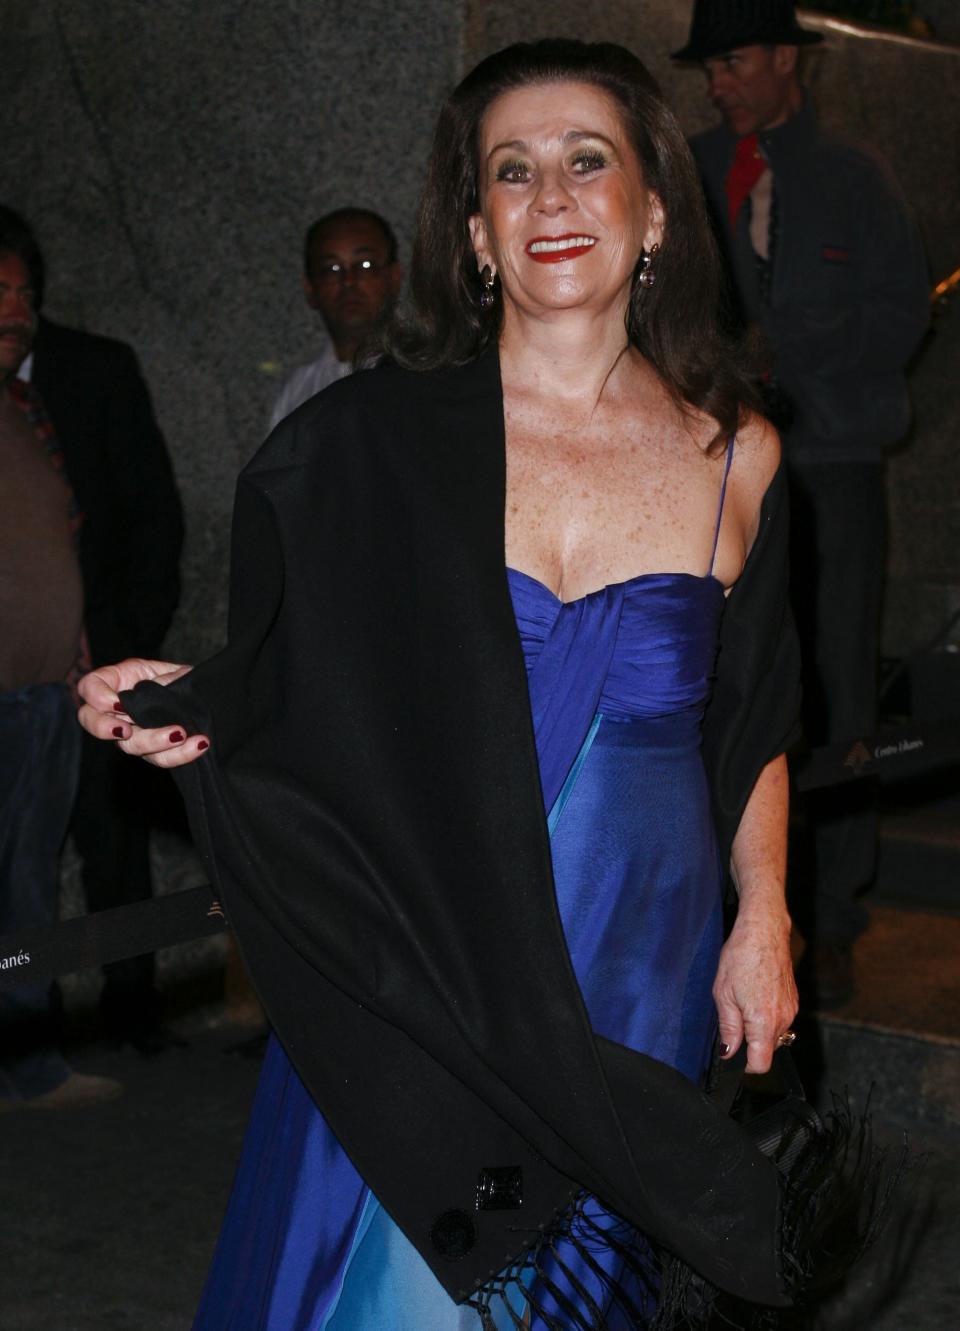 Yolanda Ciani en el 2010. (Photo by Edgar Negrete/Clasos.com/LatinContent via Getty Images)